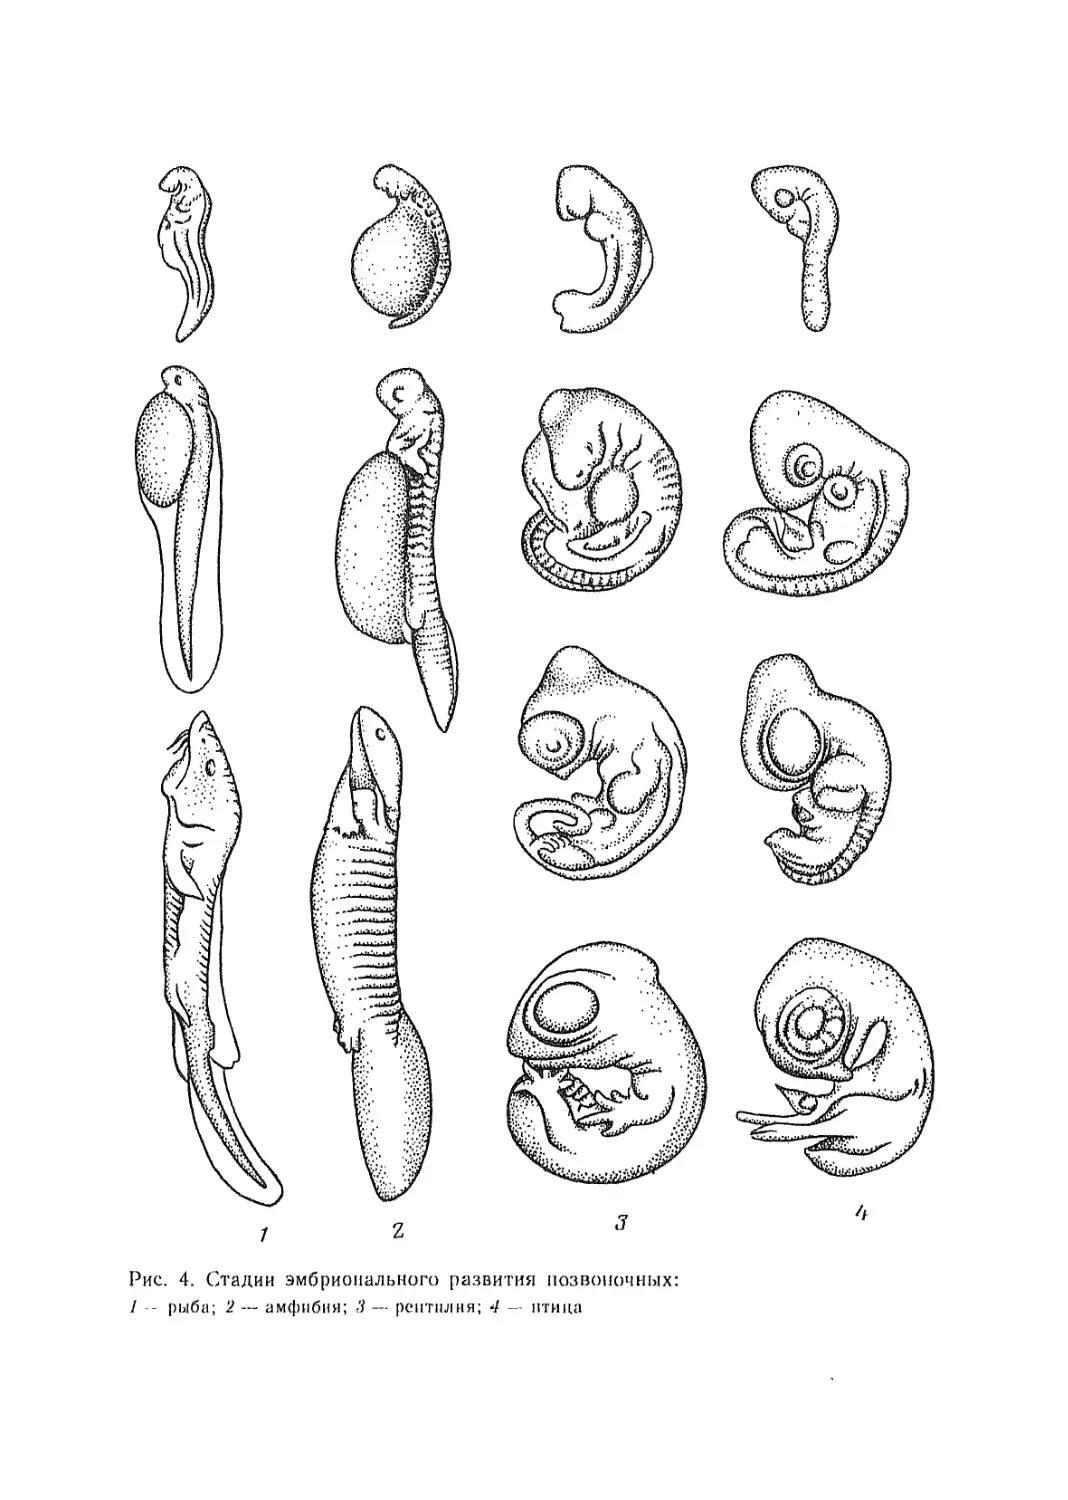 Зародыши разных видов позвоночных